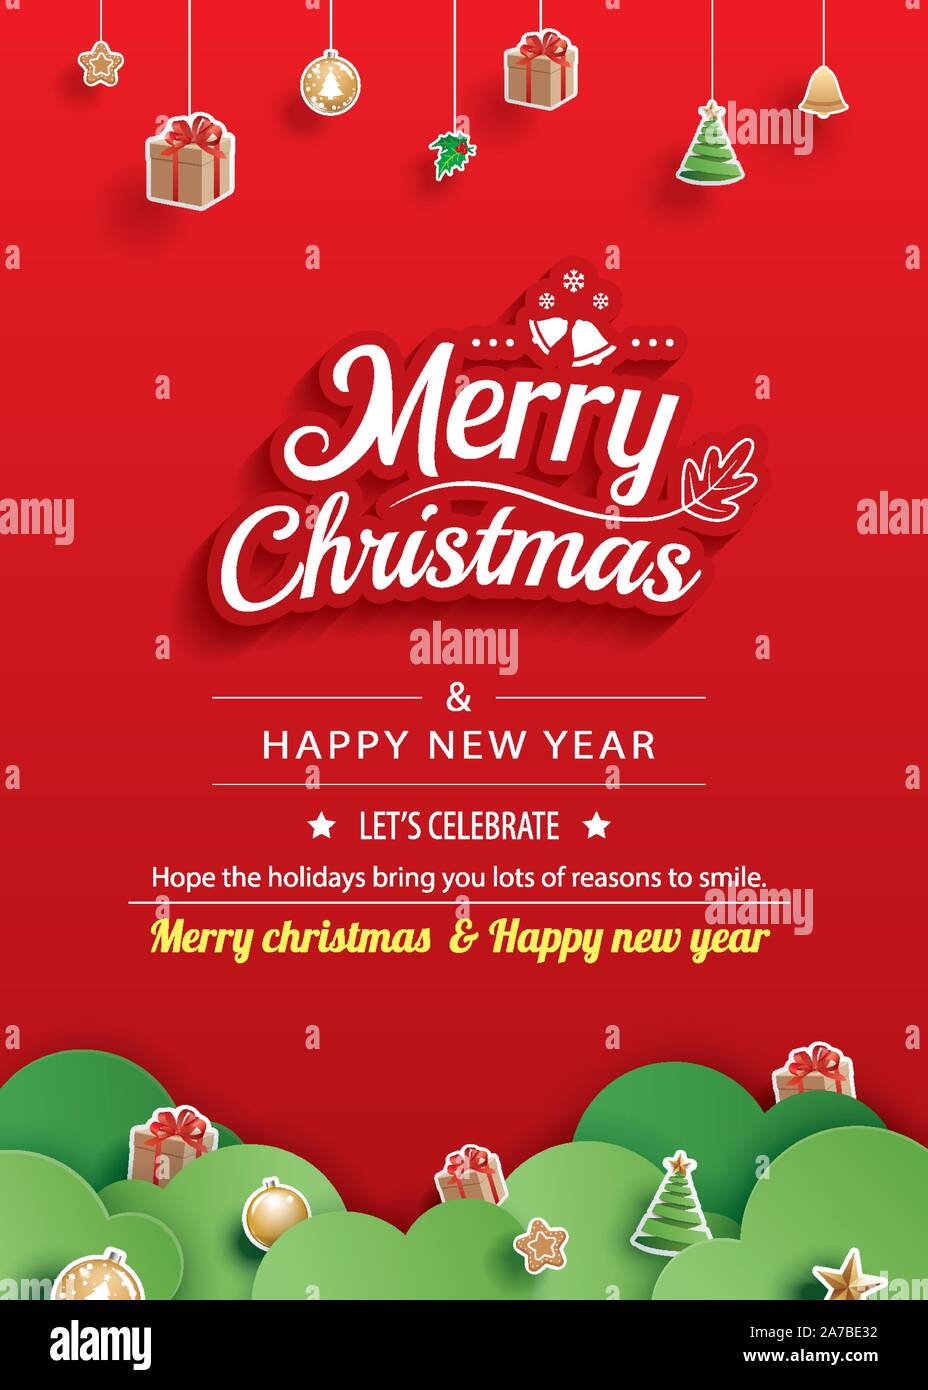 Frohe Weihnachten Und Guten Rutsch Ins Neue Jahr Grusskarten Banner Vorlage Verwenden Sie Fur Plakat Website Abdeckung Flyer Stock Vektorgrafik Alamy